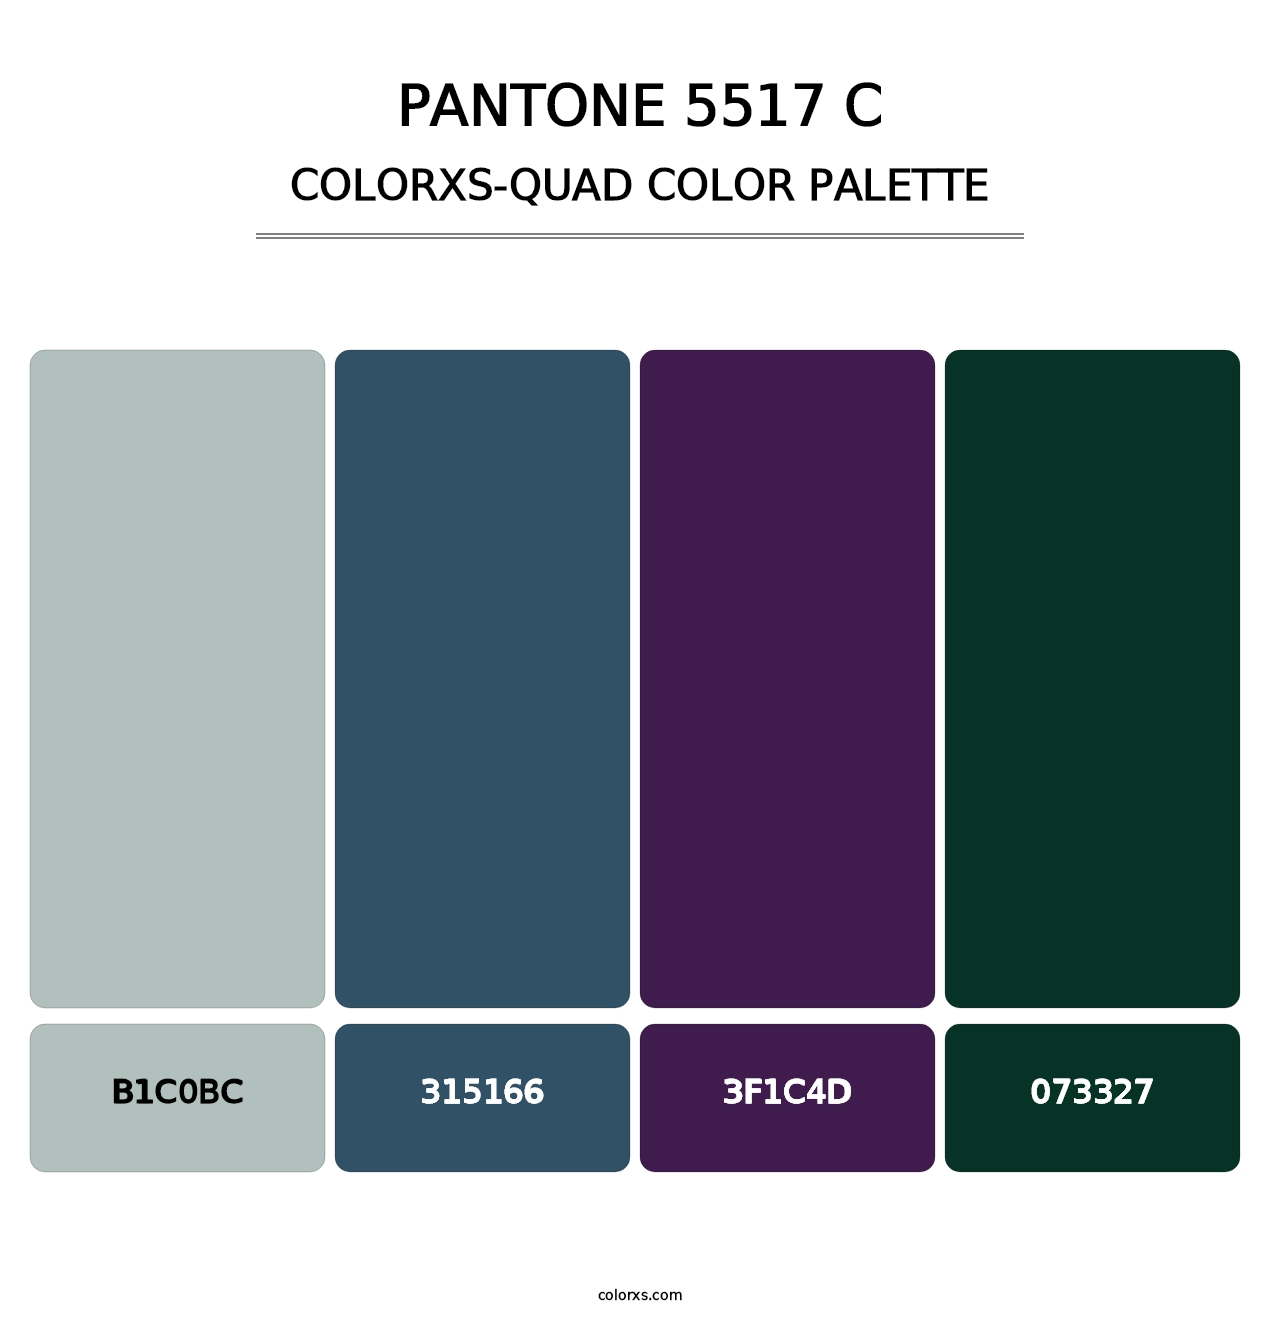 PANTONE 5517 C - Colorxs Quad Palette